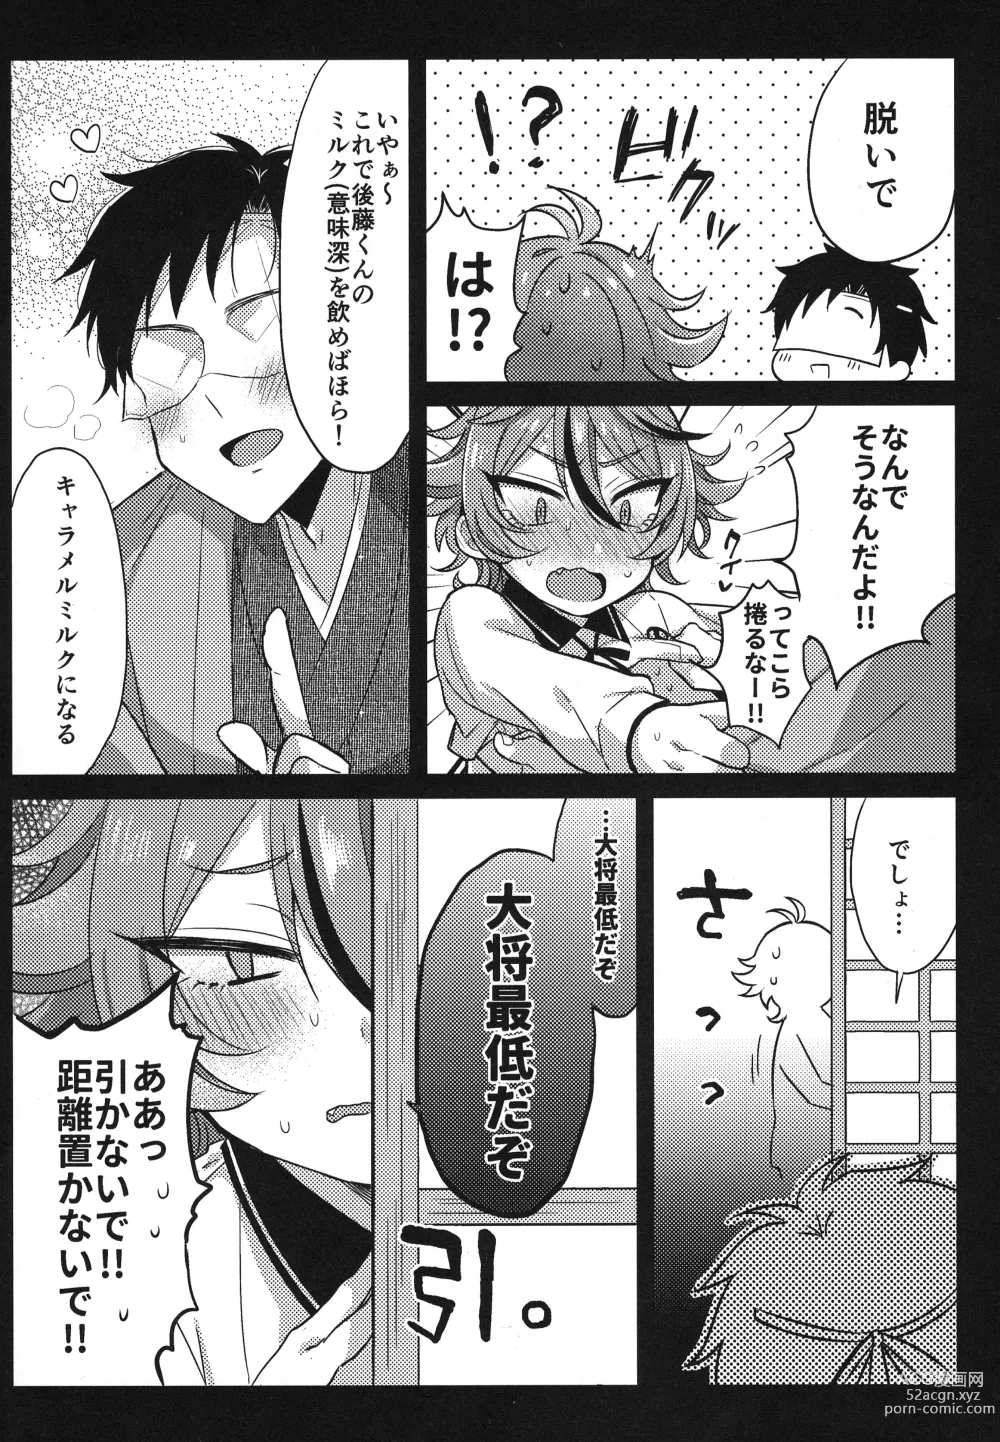 Page 197 of doujinshi Sanigoto Sairoku!